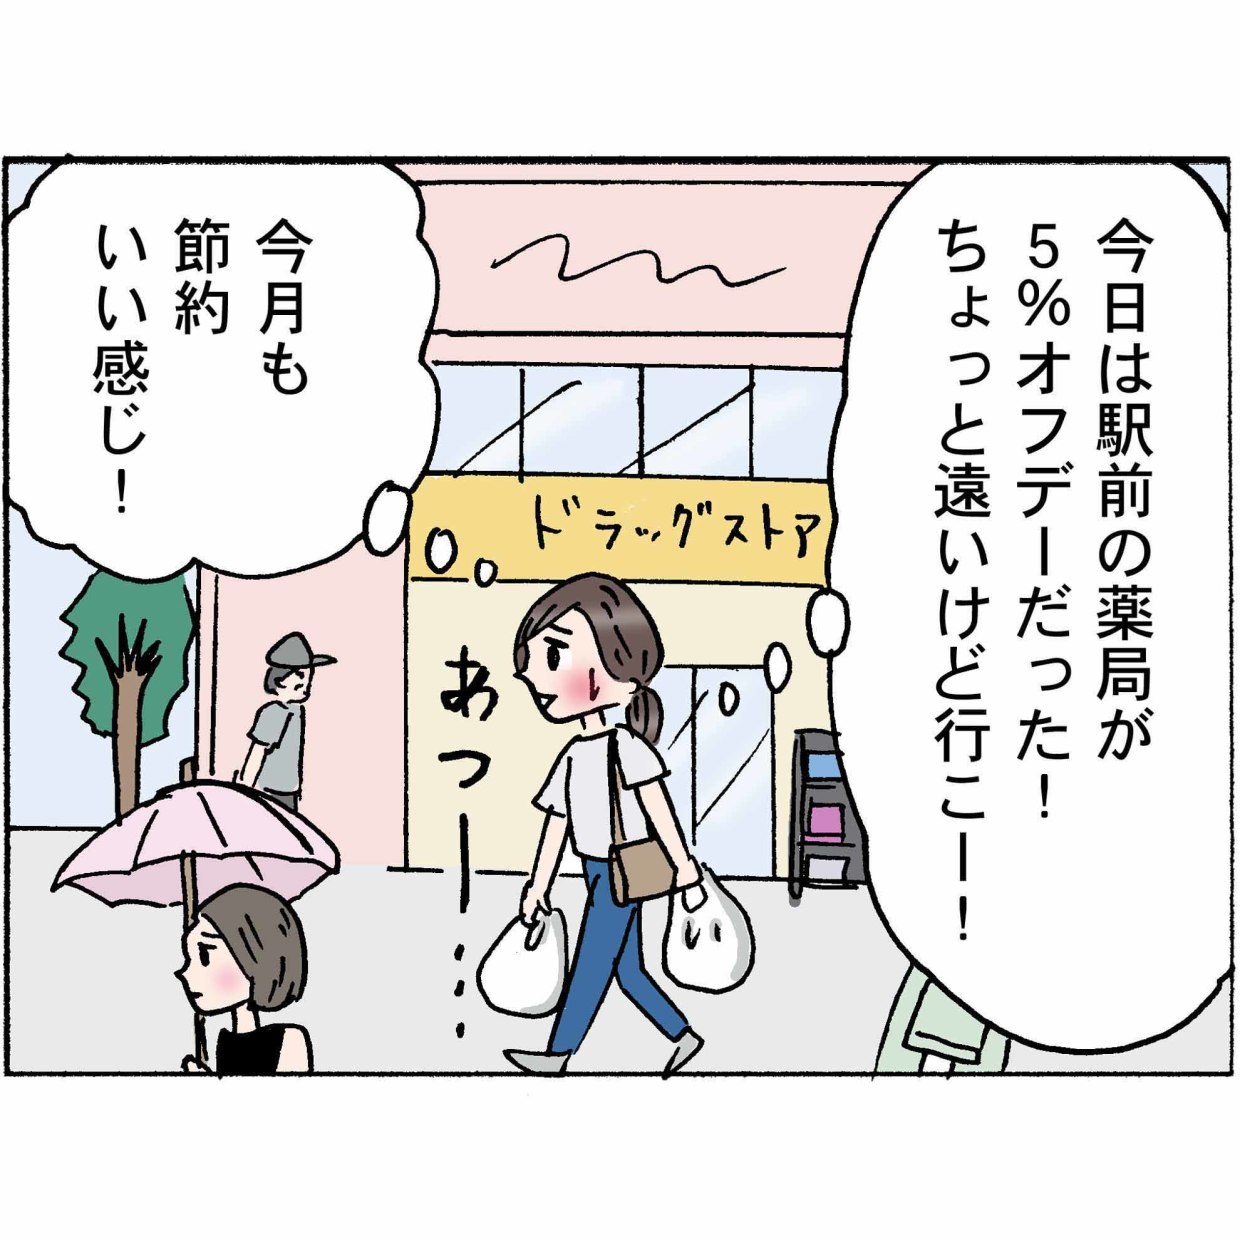  4コマ漫画 “鈴木ゆう子”の日常 